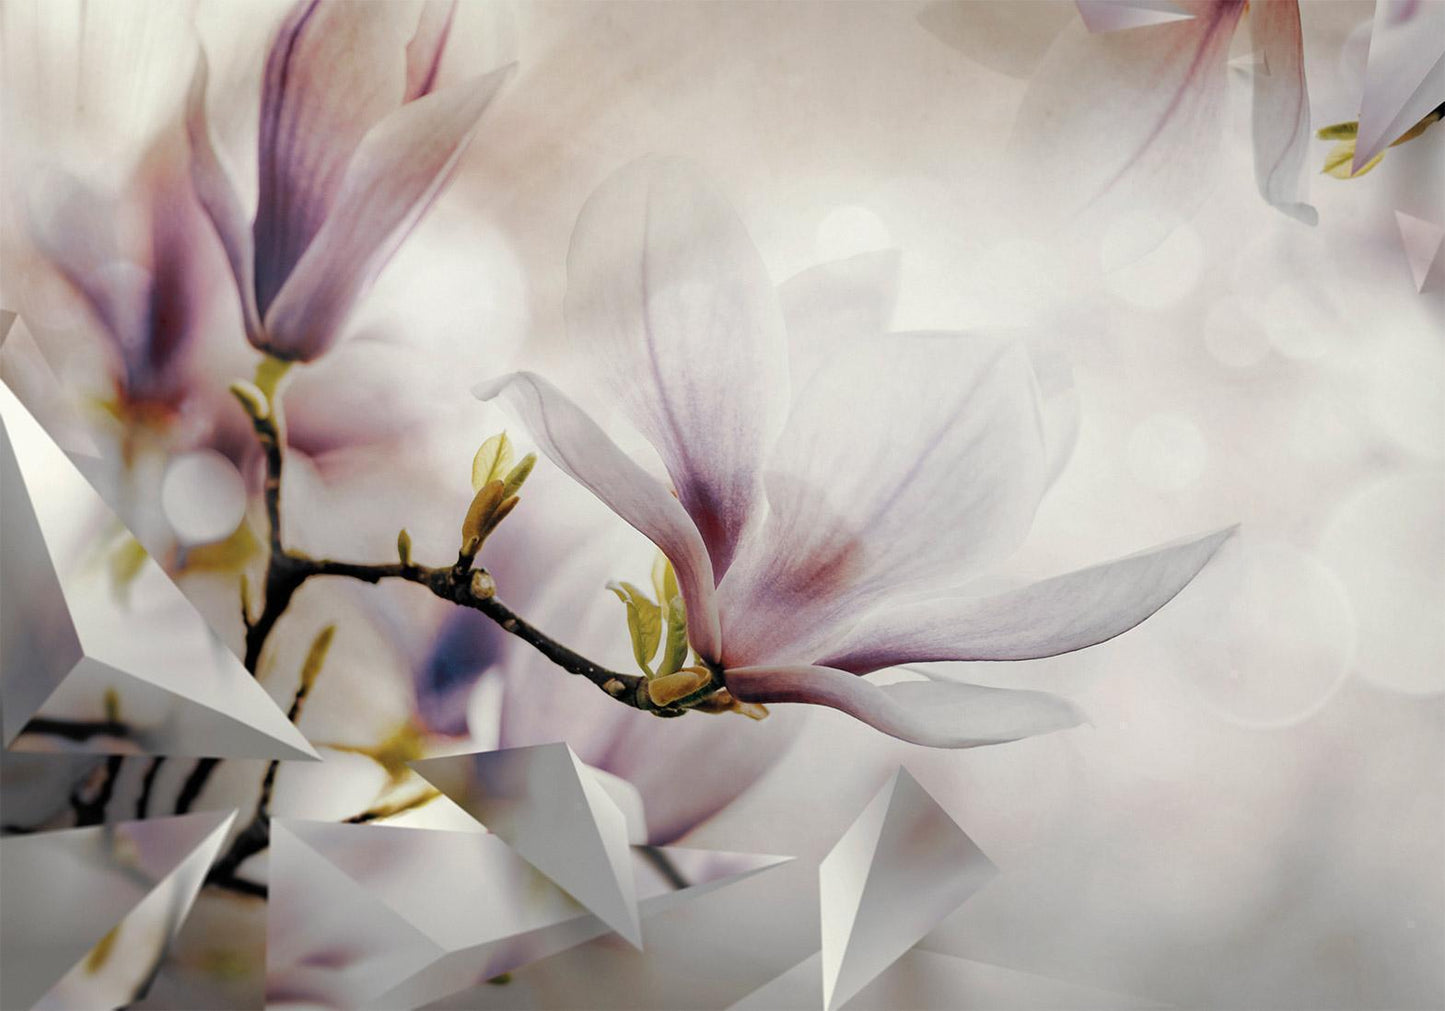 Fotobehang - Subtle Magnolias - First Variant